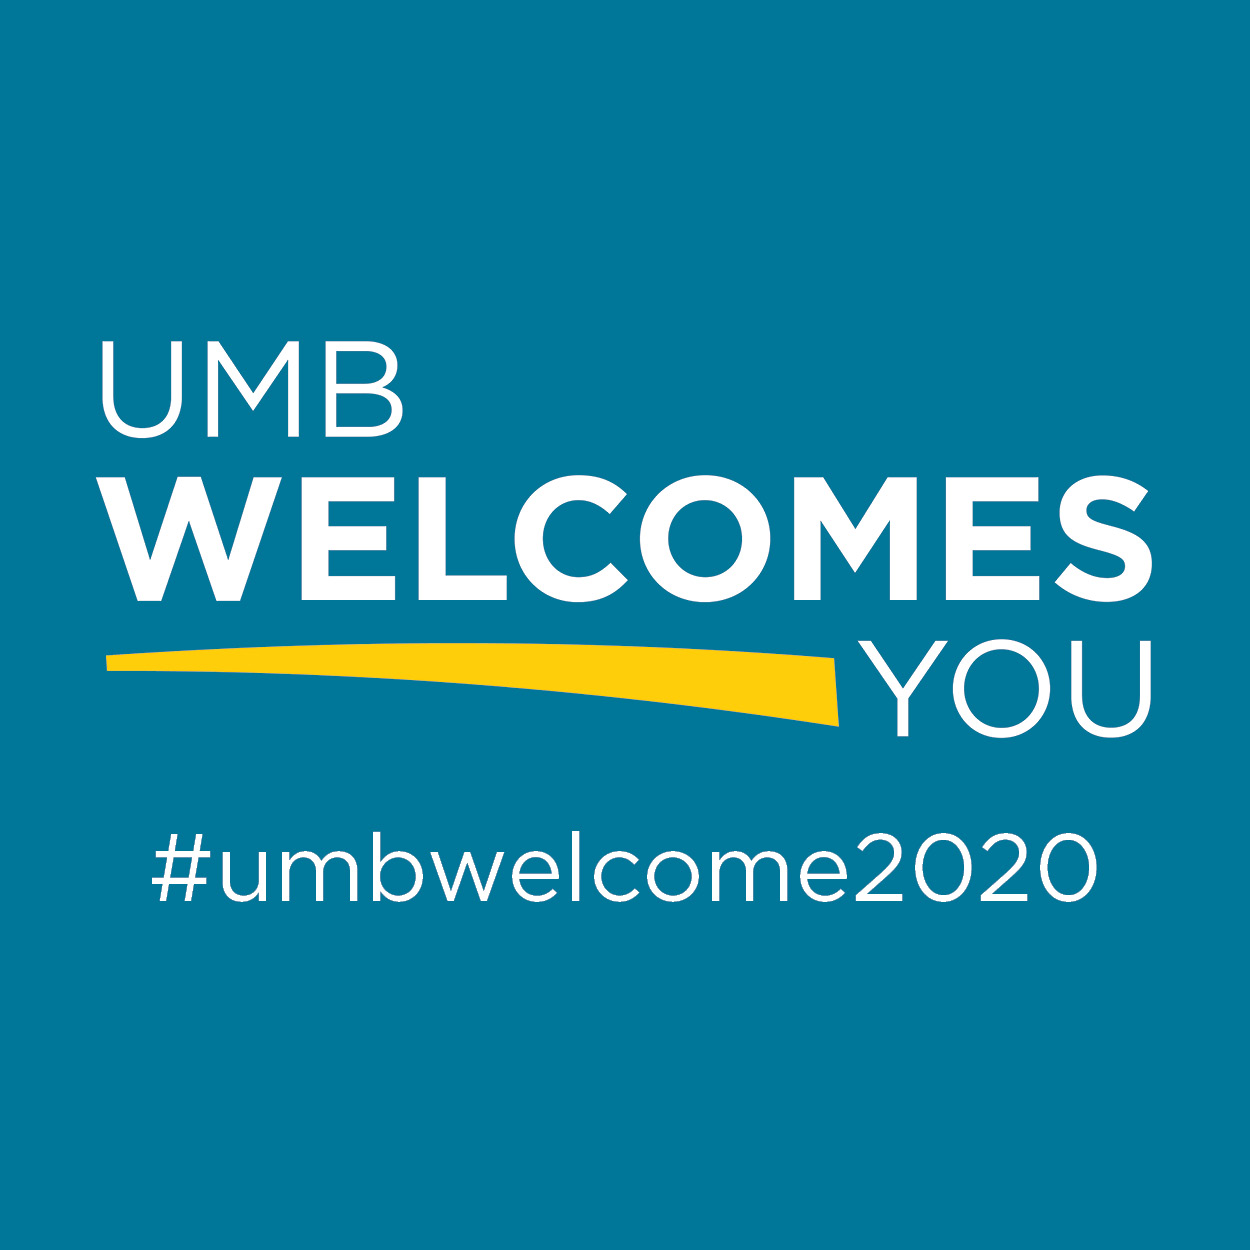 UMB Welcomes You #umbwelcome2020